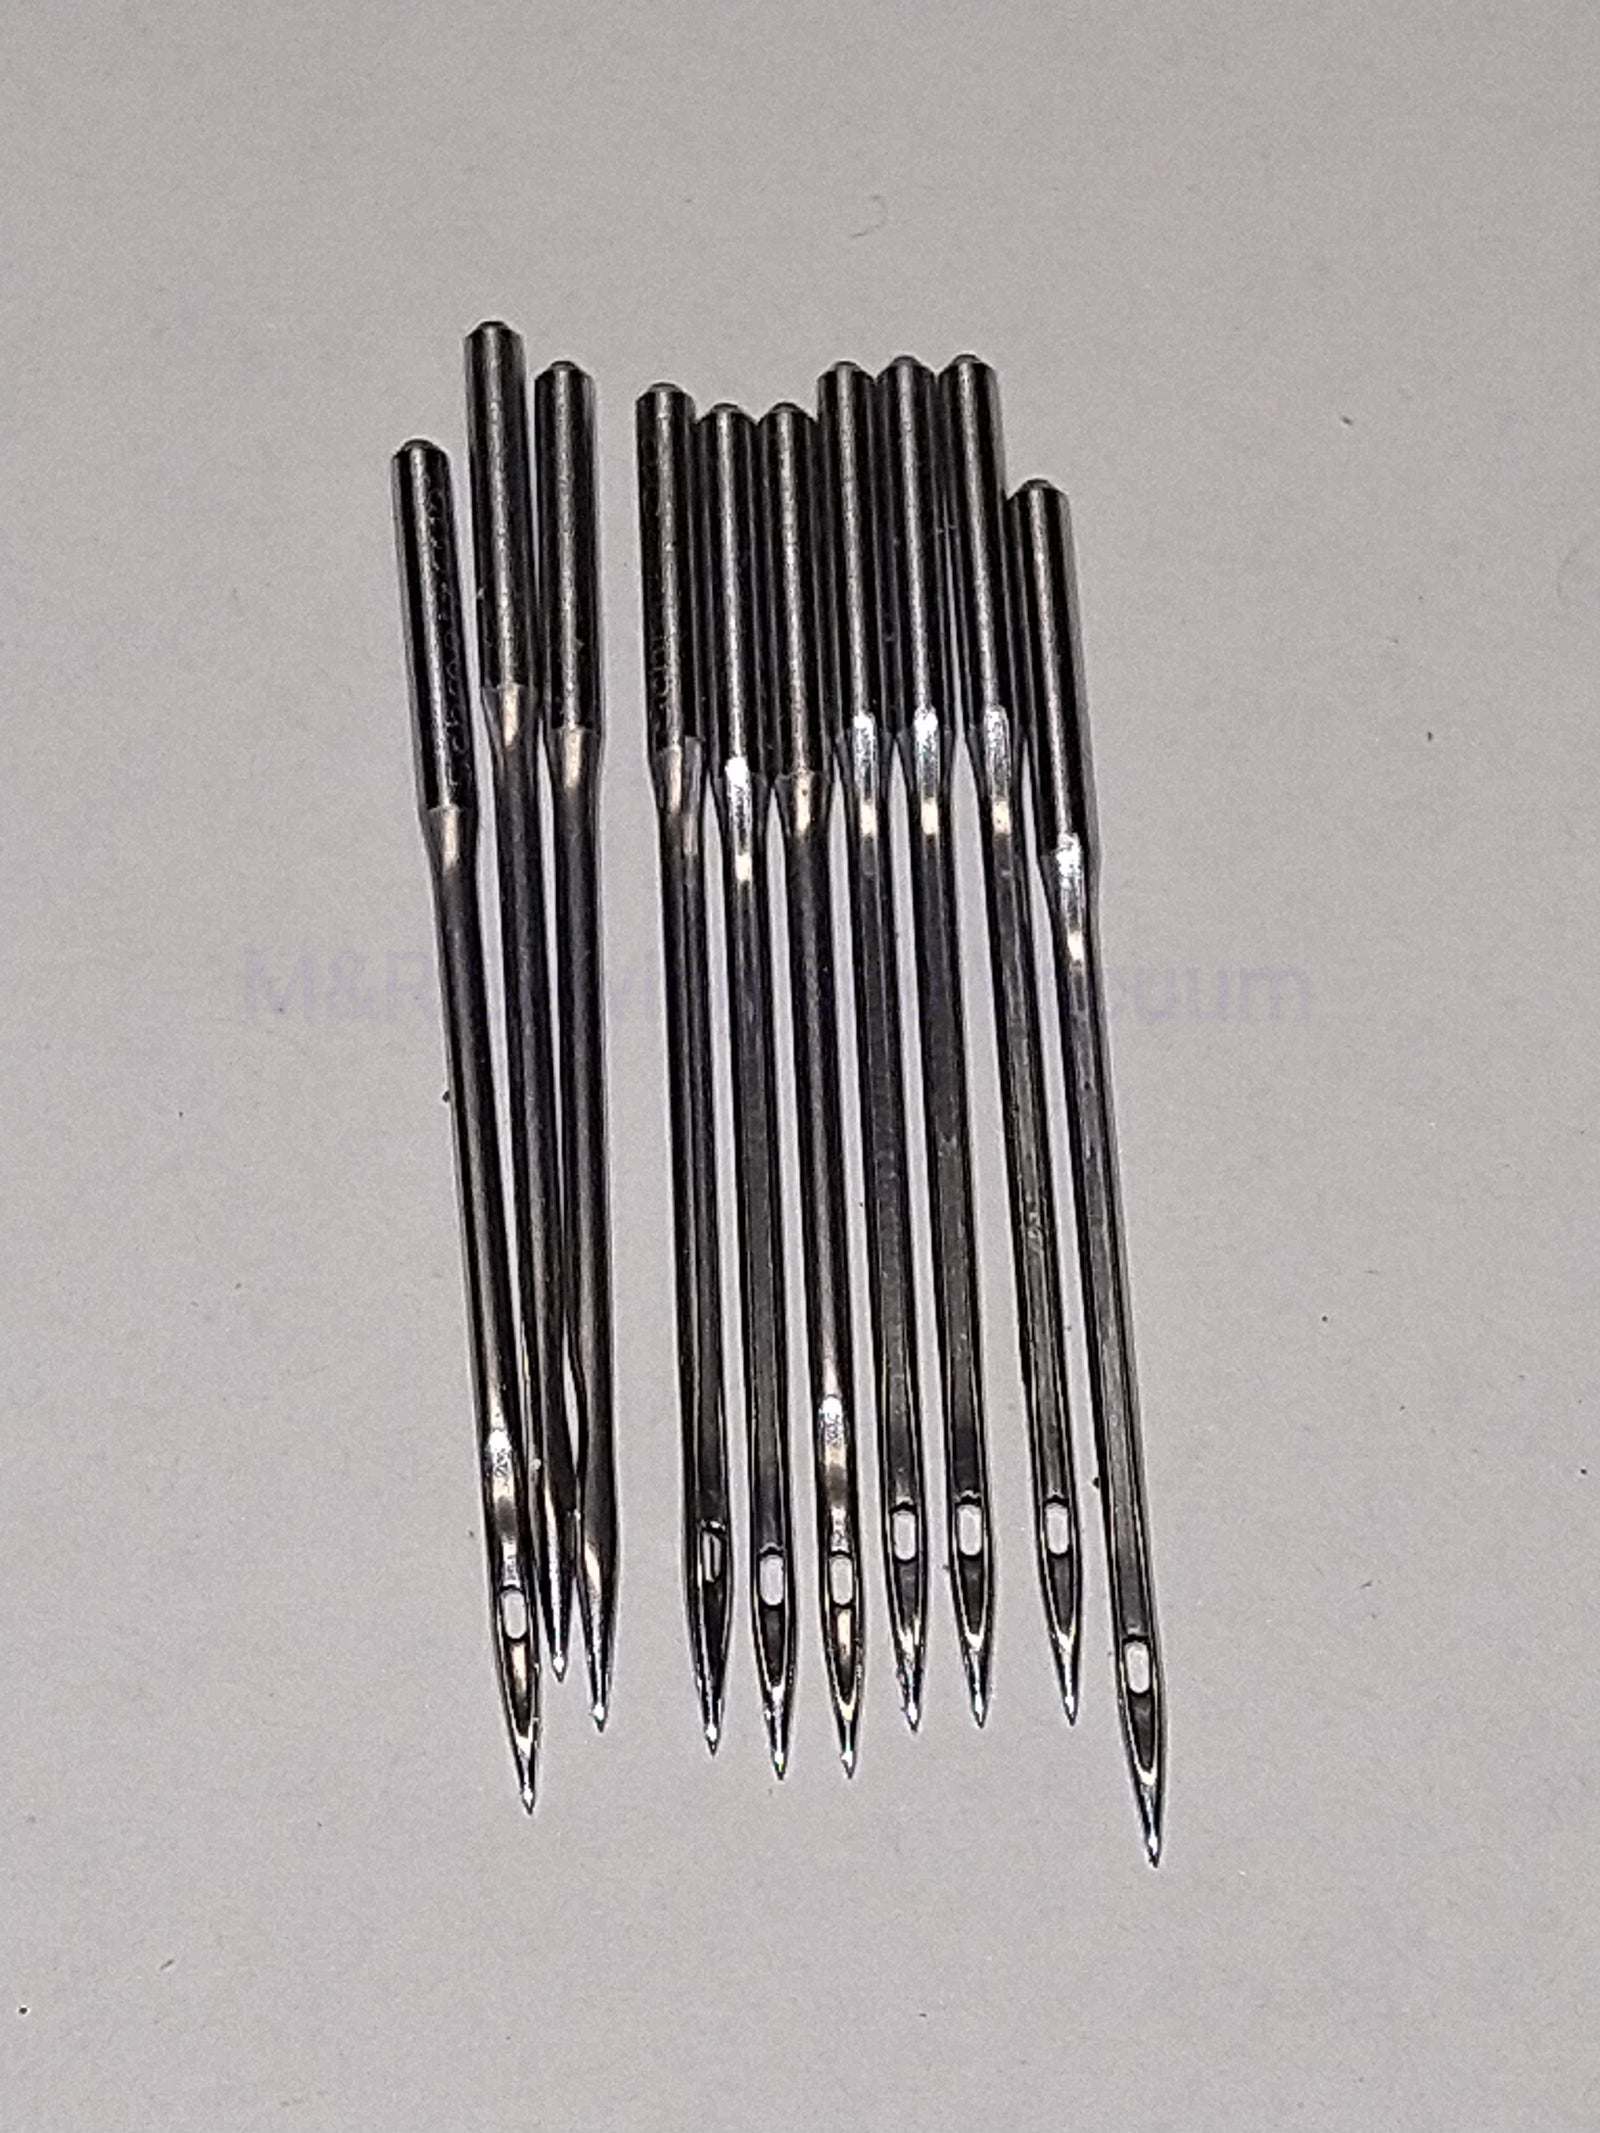 Schmetz Denim Needles - 80/12 - mrsewing